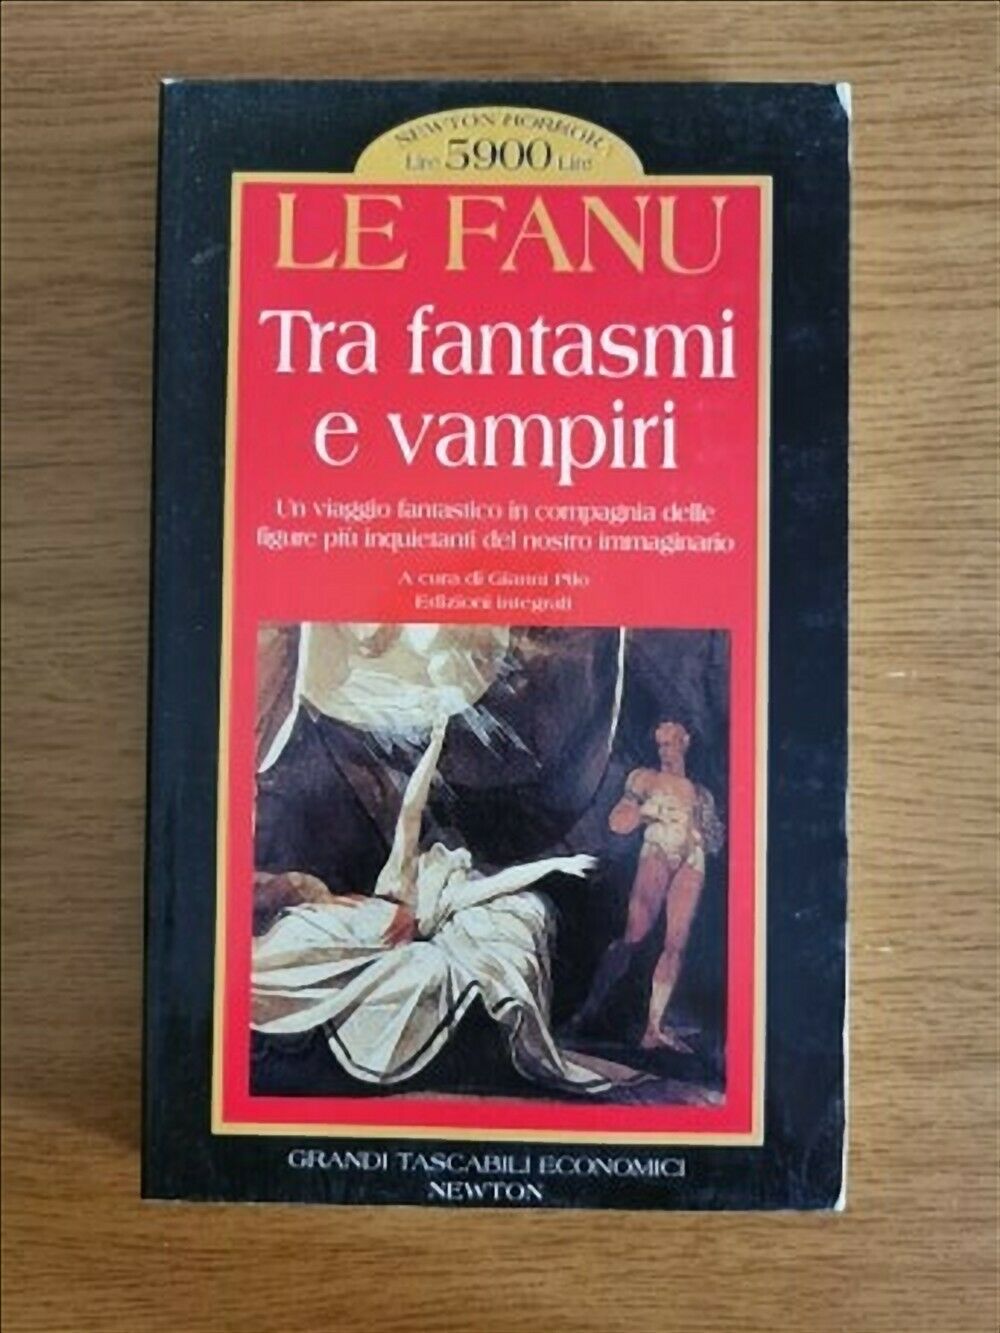 Tra fantasmi e vampiri - J. Le Fanu - Newton - 1997 - AR libro usato